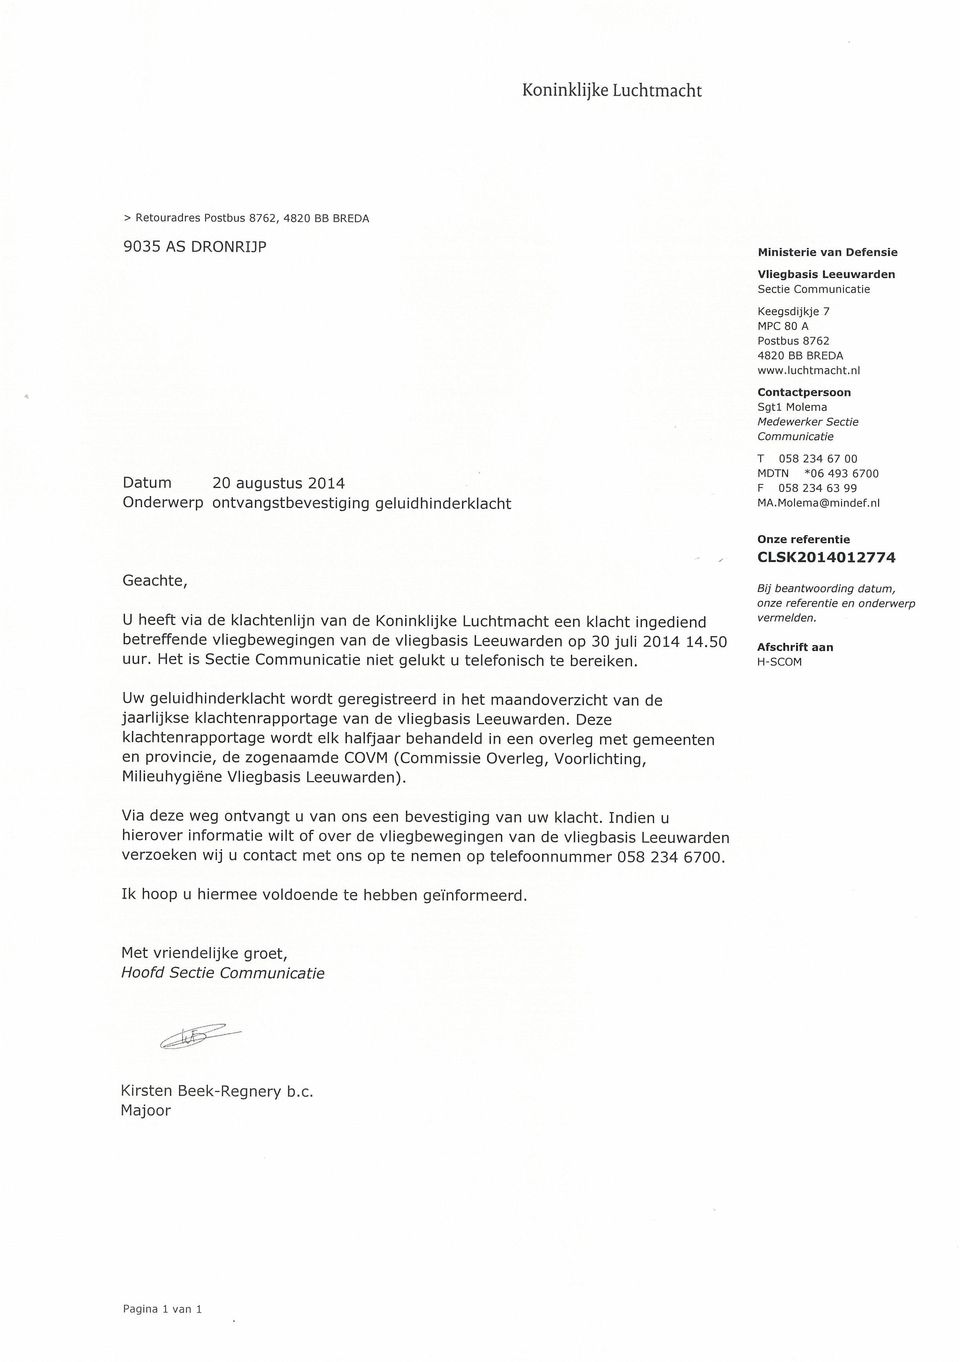 nl Geachte, U heeft via de klachtenlijn van de Koninklijke Luchtmacht een klacht ingediend betreffende vliegbewegingen van de vliegbasis Leeuwarden op 30juli 2014 14.50 uur.